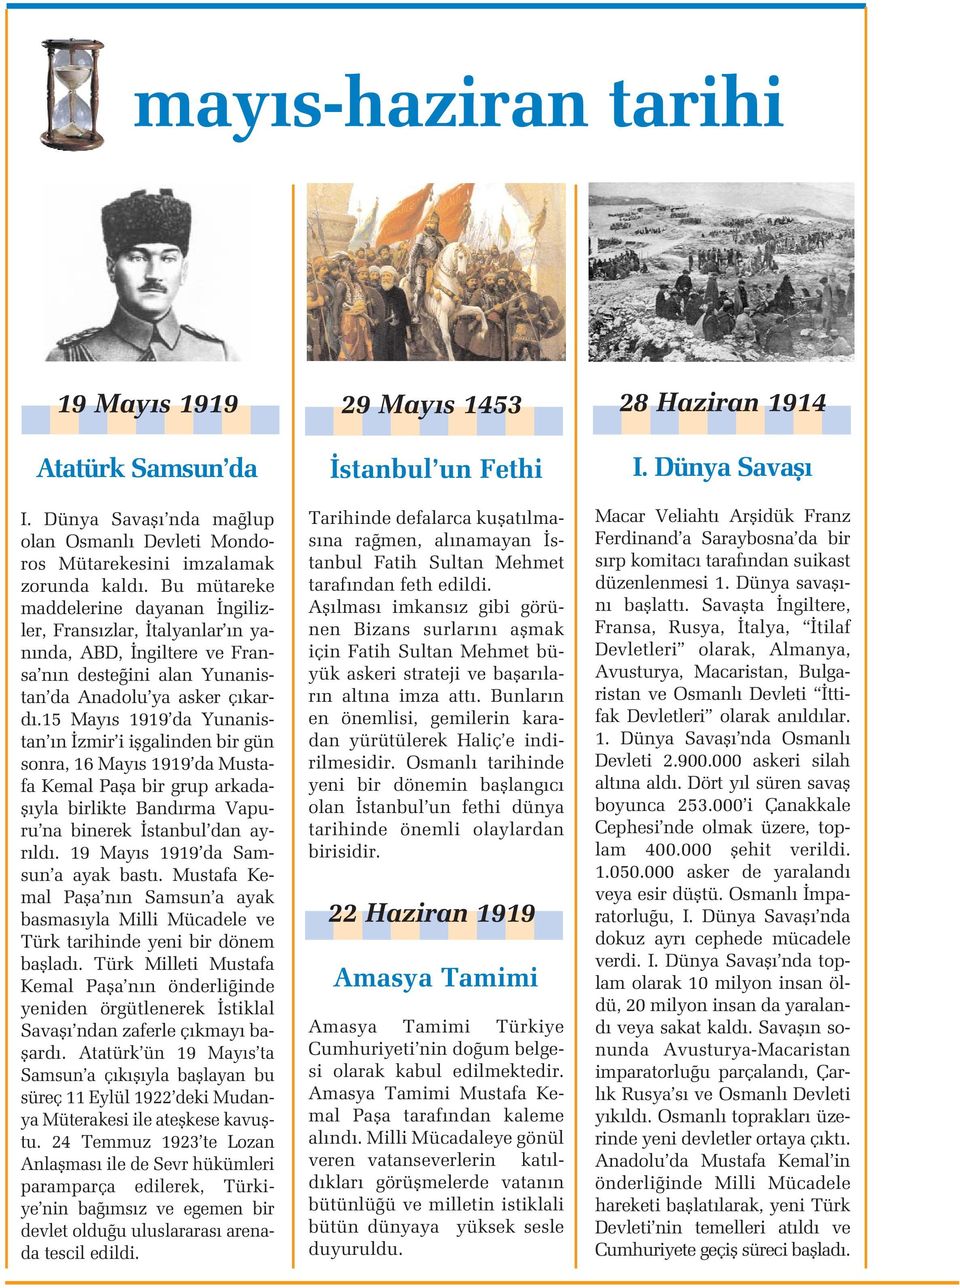 15 May s 1919 da Yunanistan n zmir i iflgalinden bir gün sonra, 16 May s 1919 da Mustafa Kemal Pafla bir grup arkadafl yla birlikte Band rma Vapuru na binerek stanbul dan ayr ld.